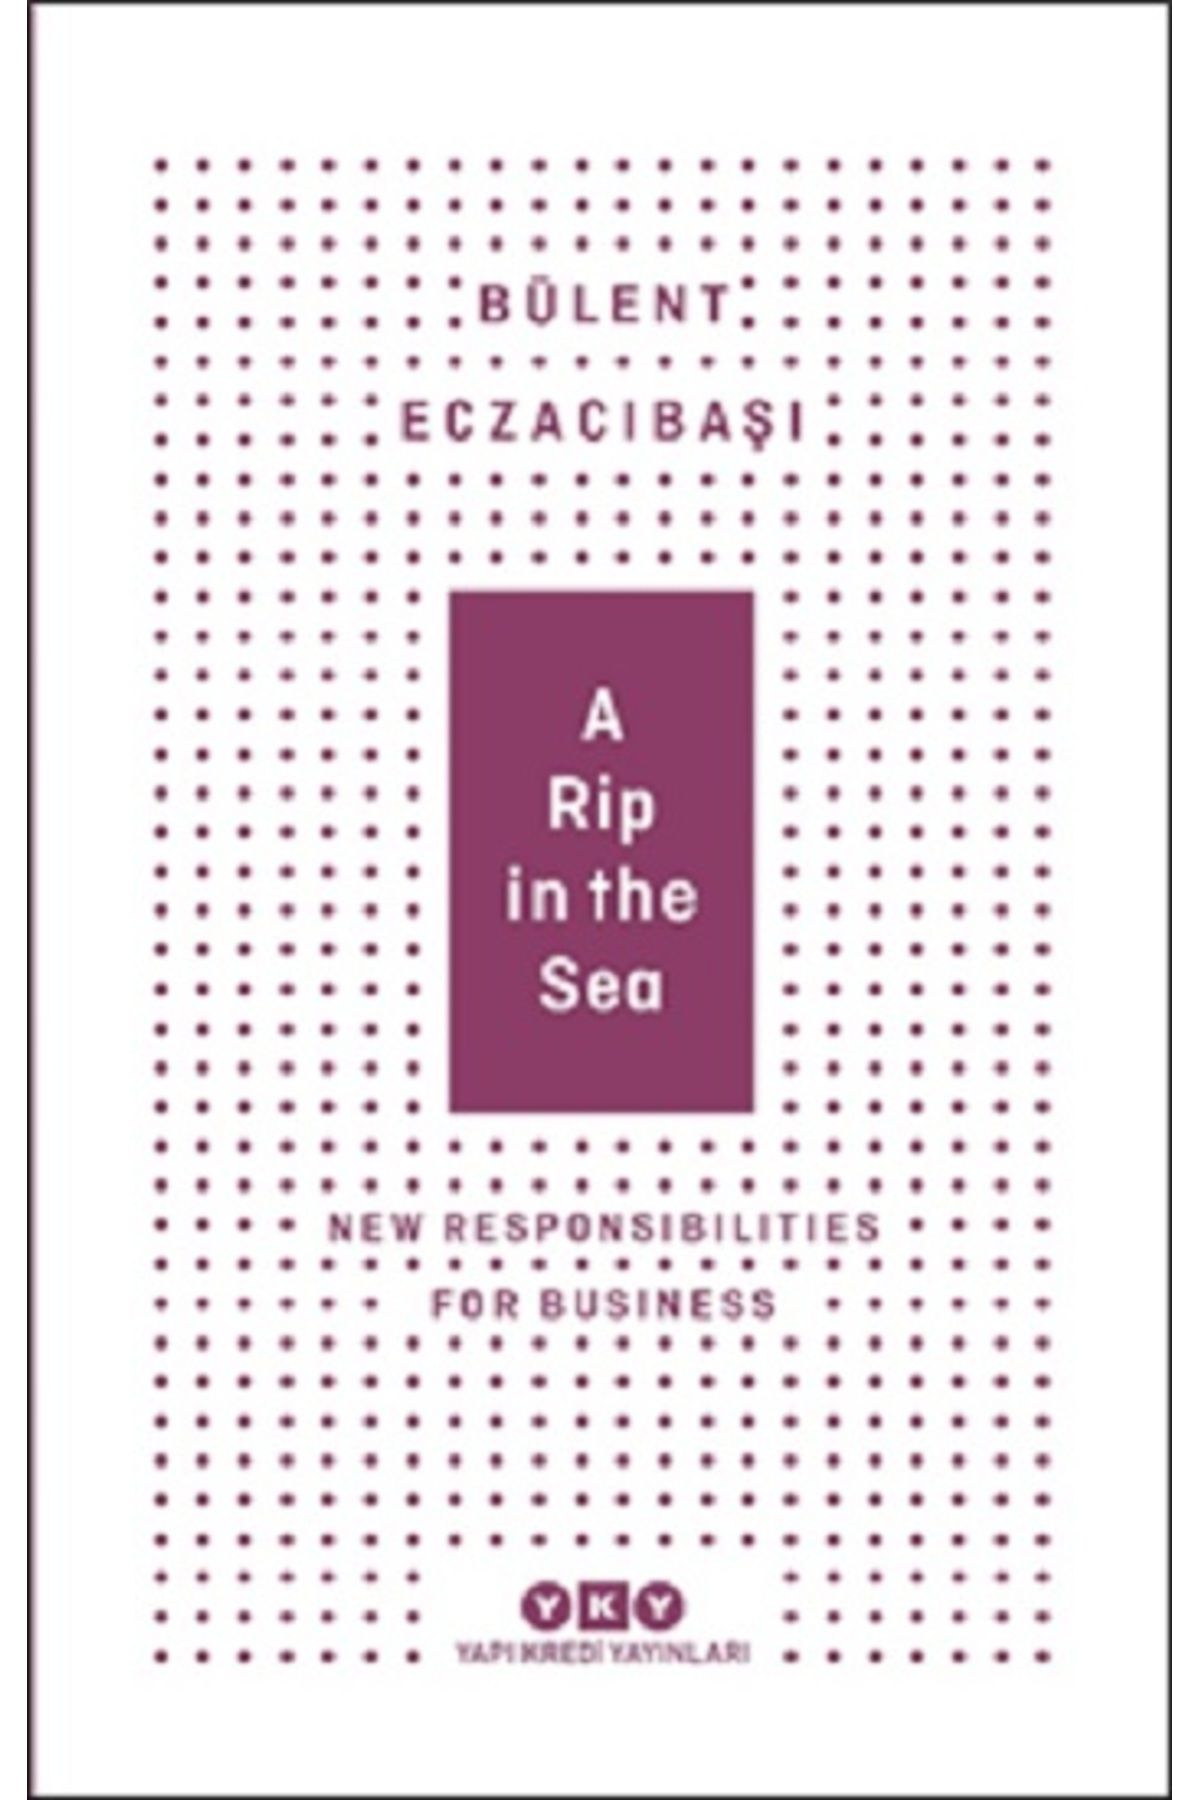 Yapı Kredi Yayınları A Rip In The Sea - New Responsibilities For Business kitabı - Bülent Eczacıbaşı - Yapı Kredi Yayınla